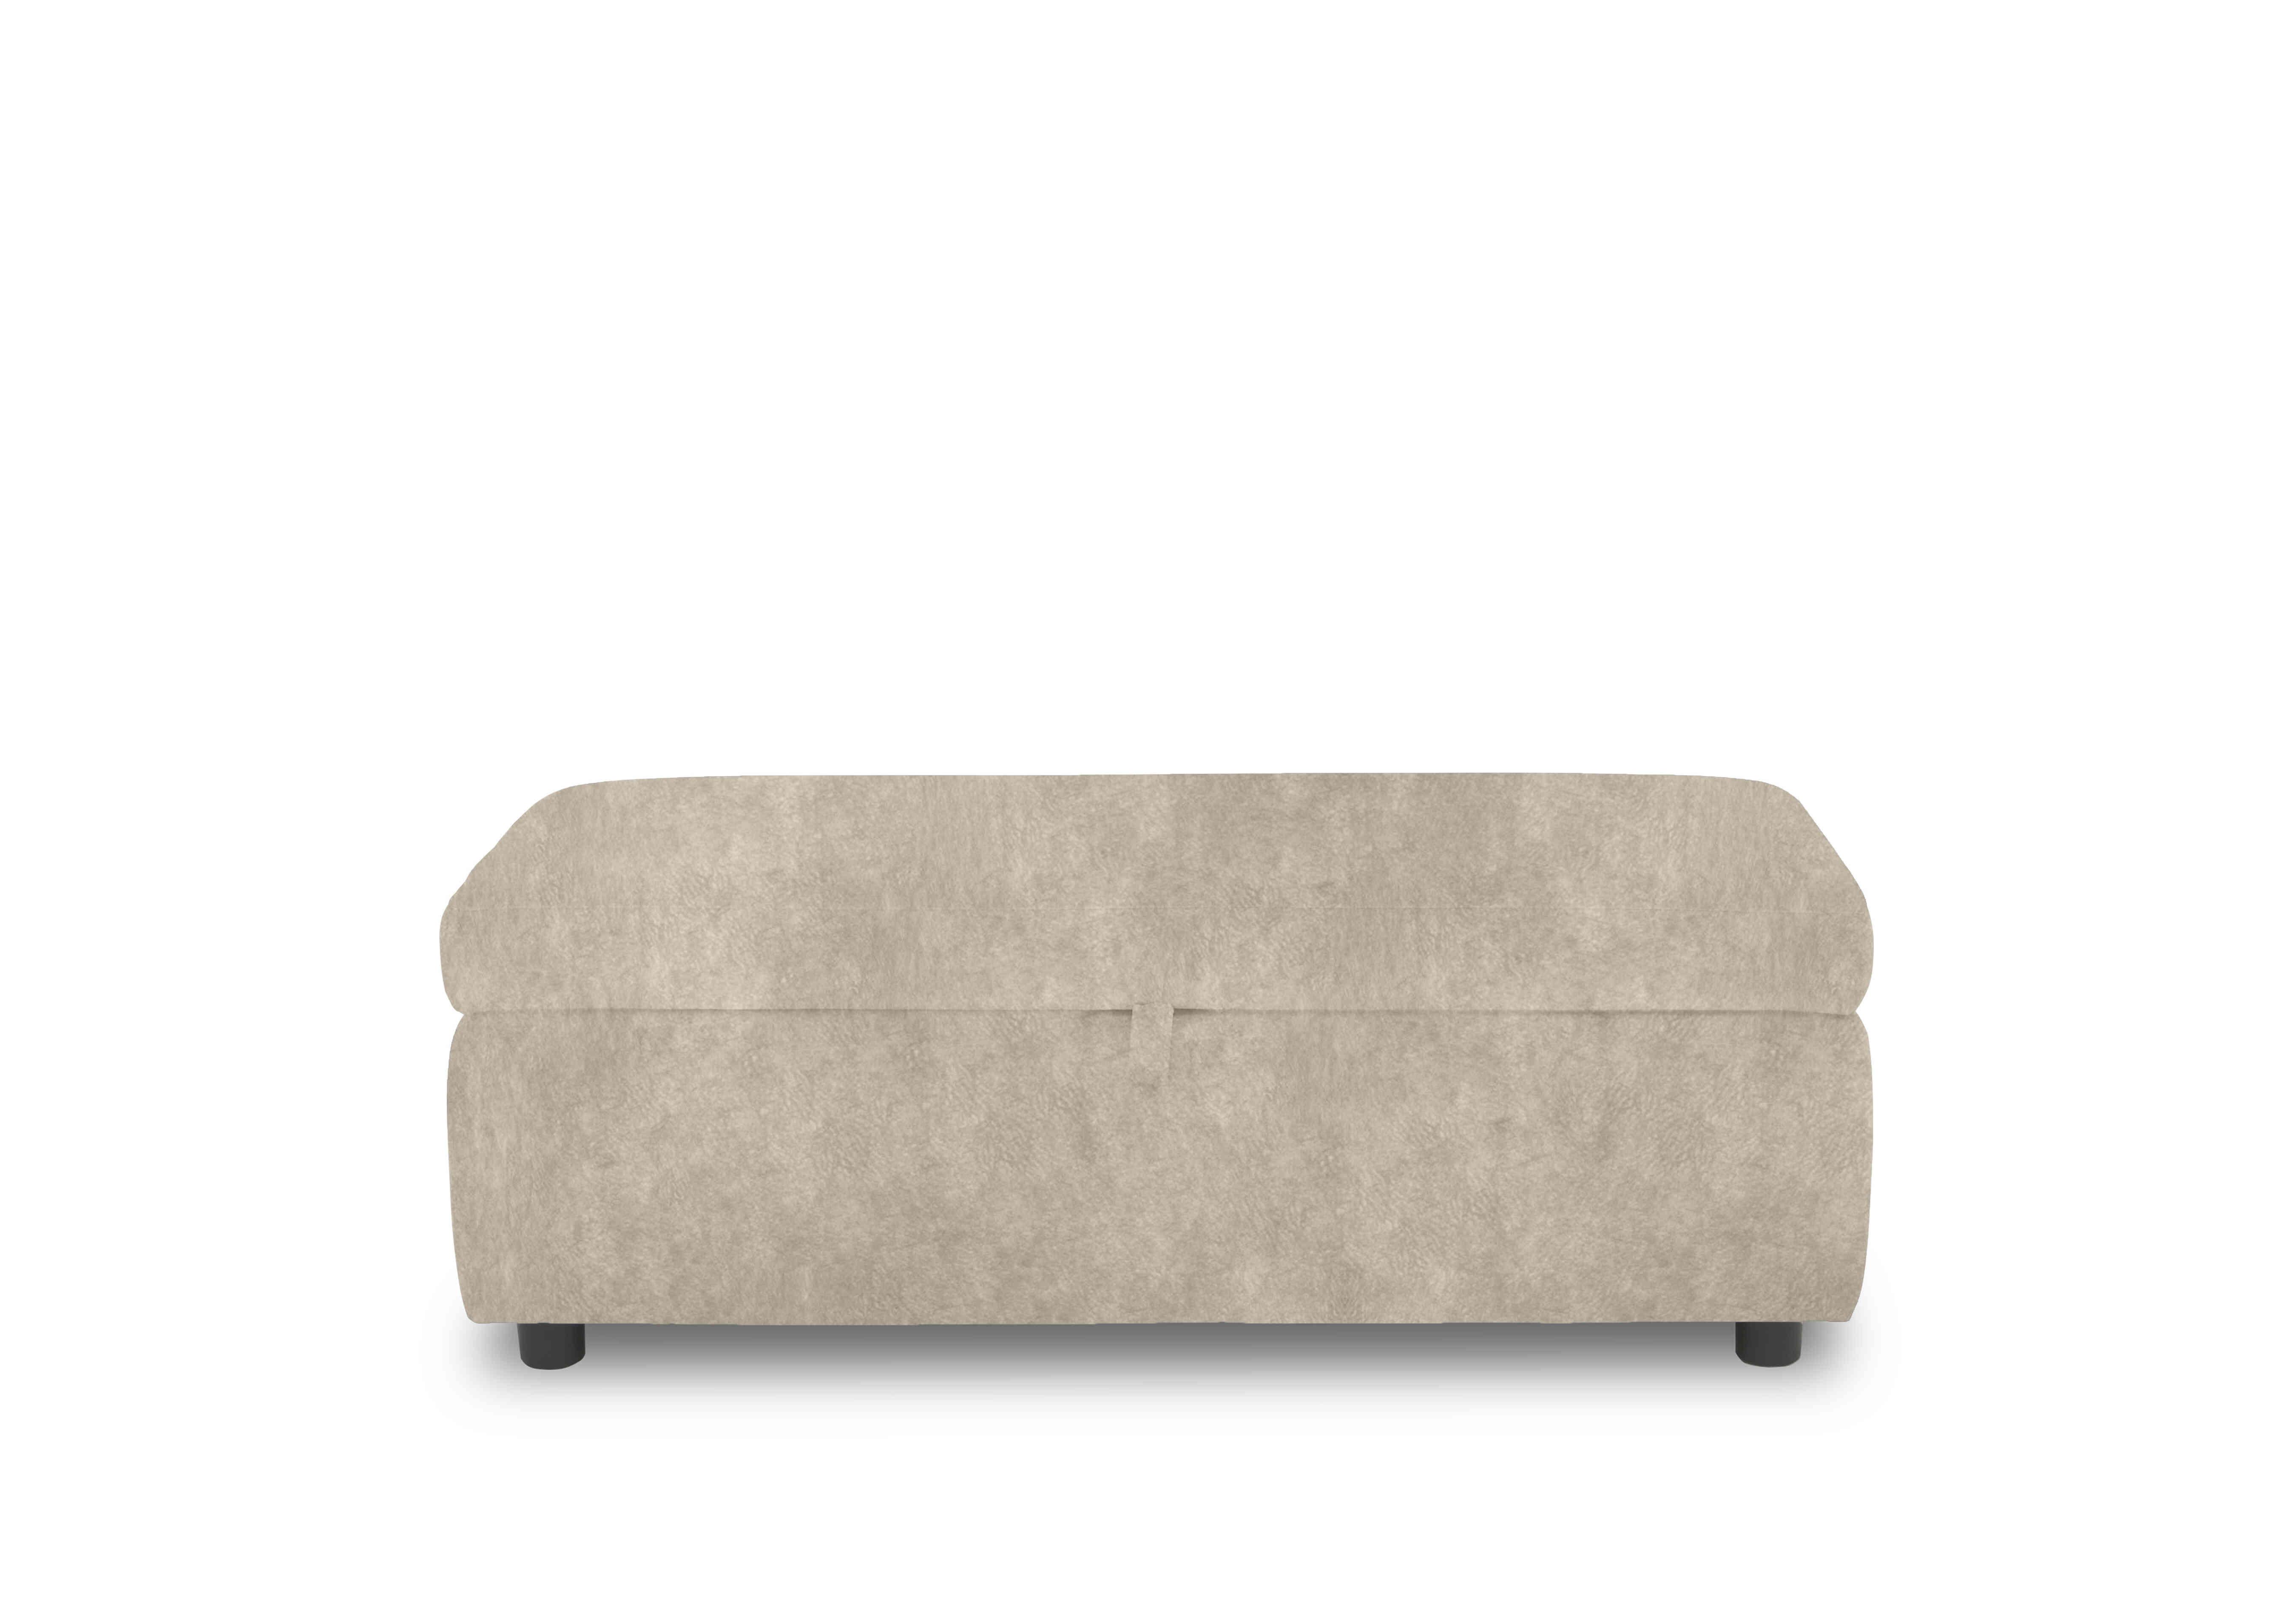 Tyrell 120cm Fabric Blanket Box in Bfa-Bnn-R26 Cream on Furniture Village